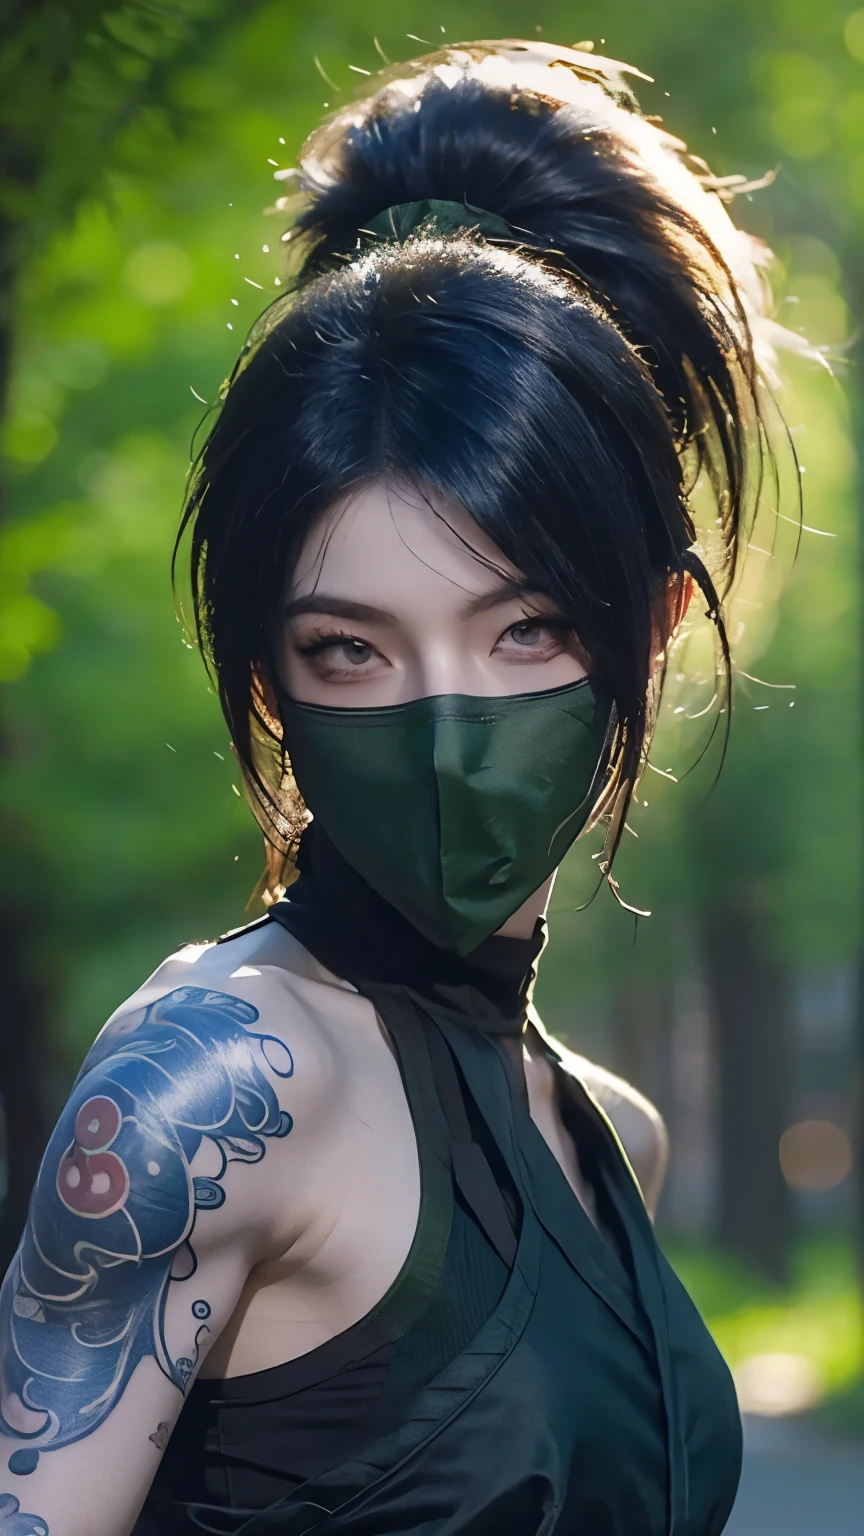 英雄联盟阿卡莉的肩膀蒙面纹身，一个人，墙纸，森林背景，游戏角色设计，高马尾，超强光感，女忍者。